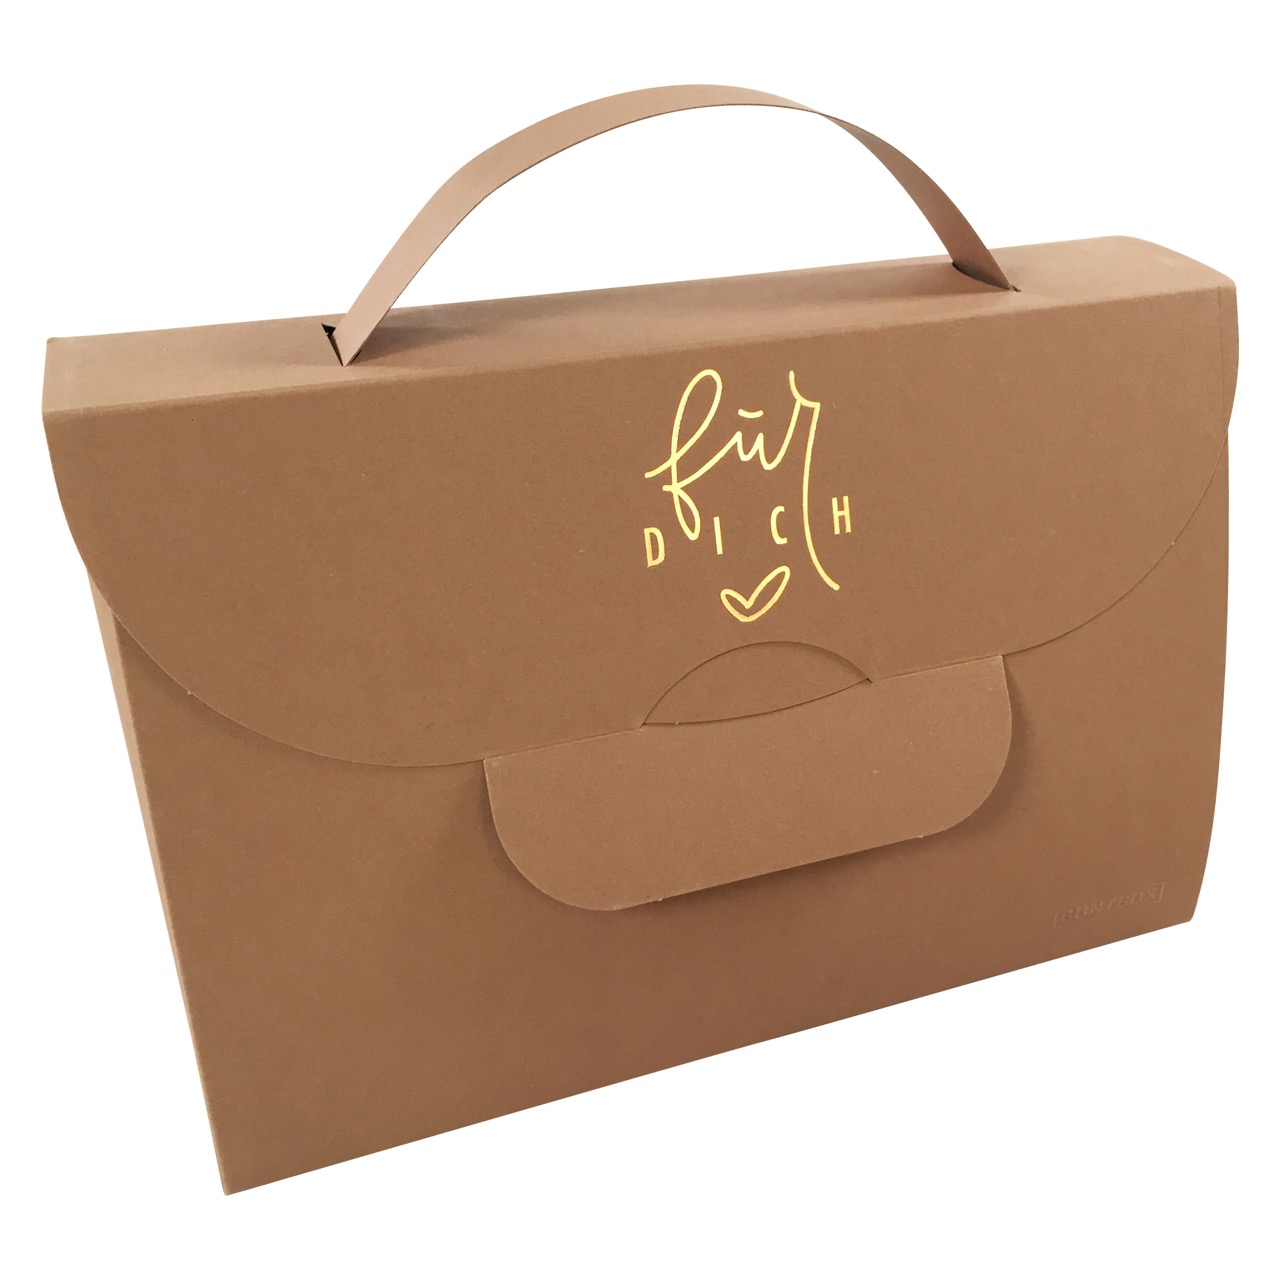 Buntbox Handbag XL Für Dich